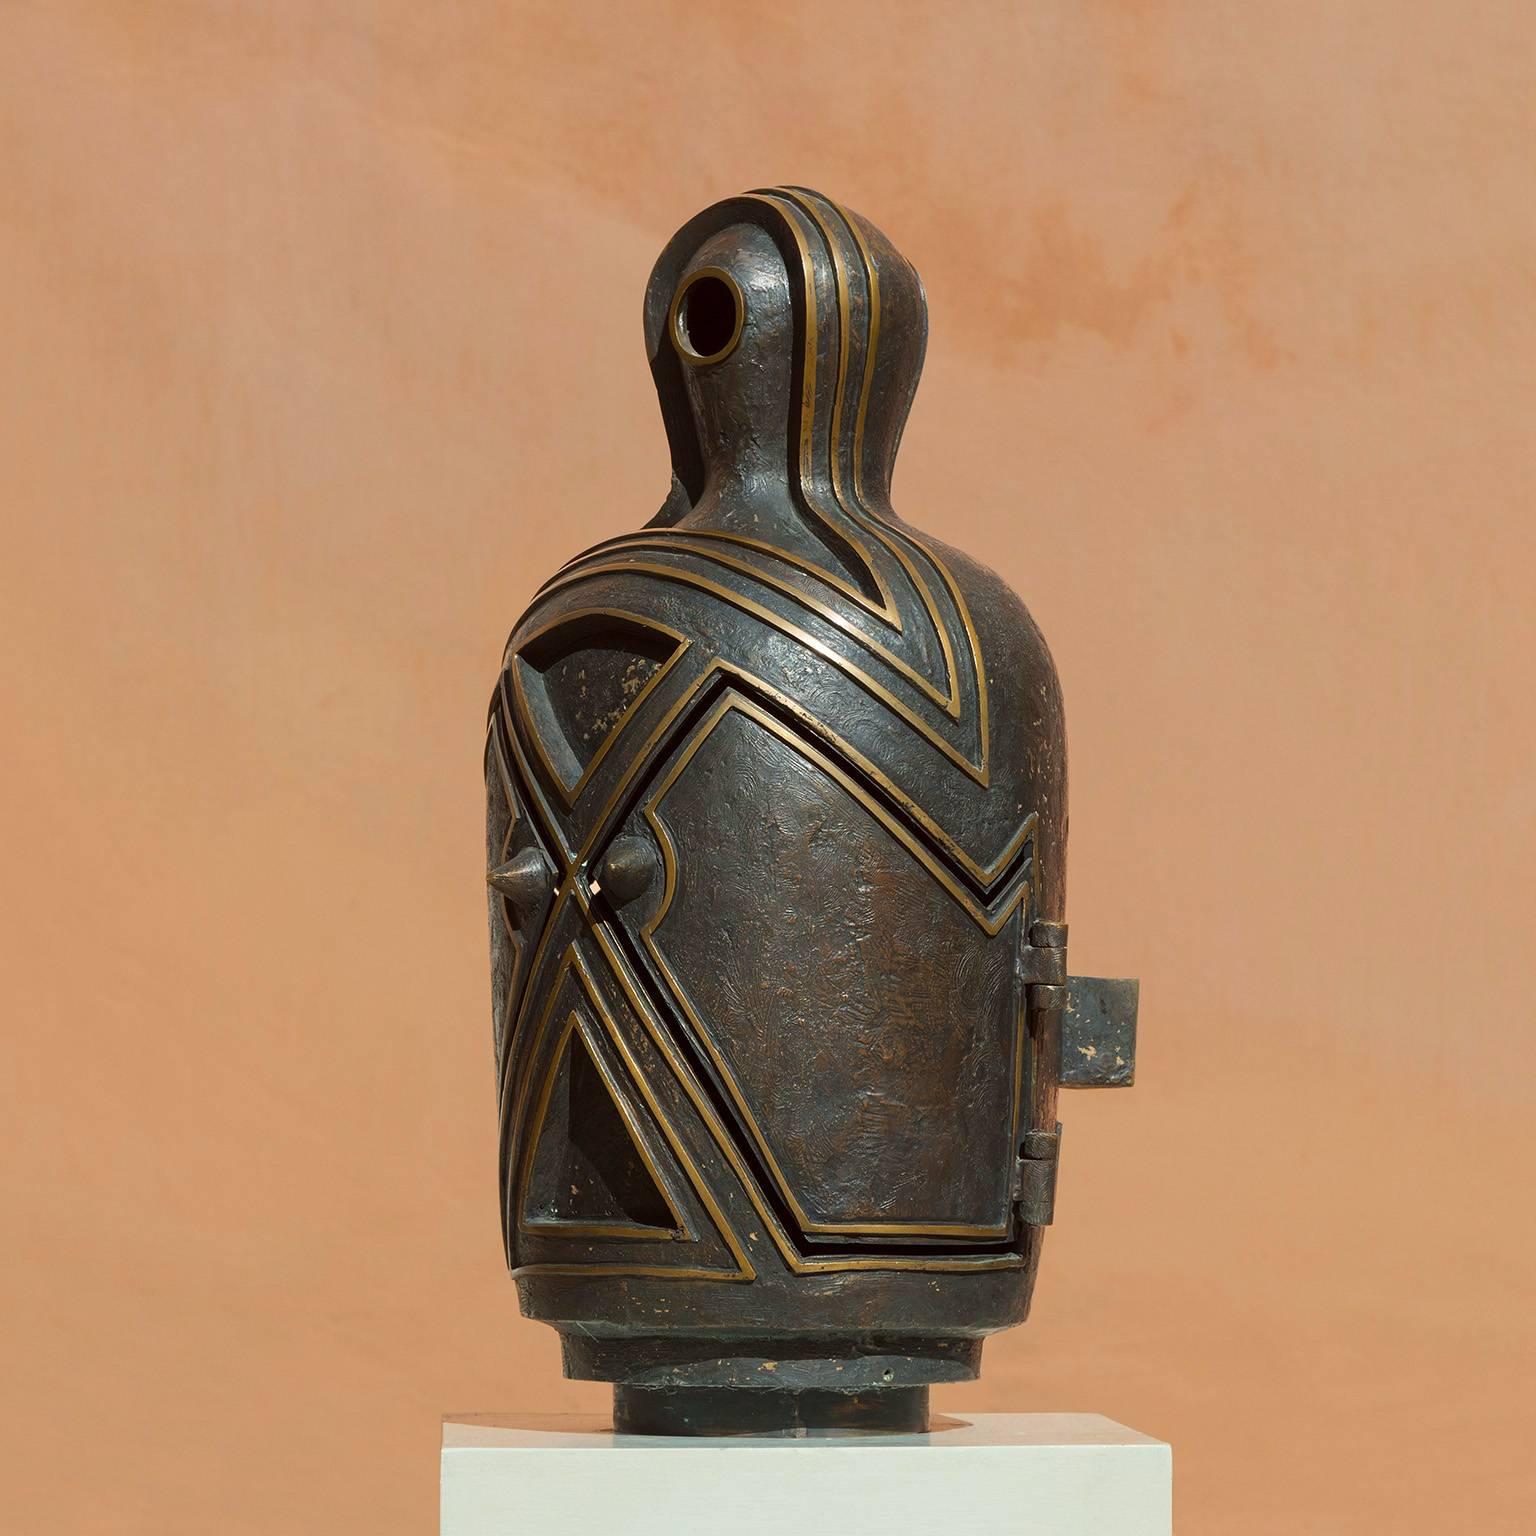 Canopo – Bronzeskulptur mit geheimen Fächern, Gedenkurne, Antropomorphe Skulptur – Sculpture von Angelo Canevari